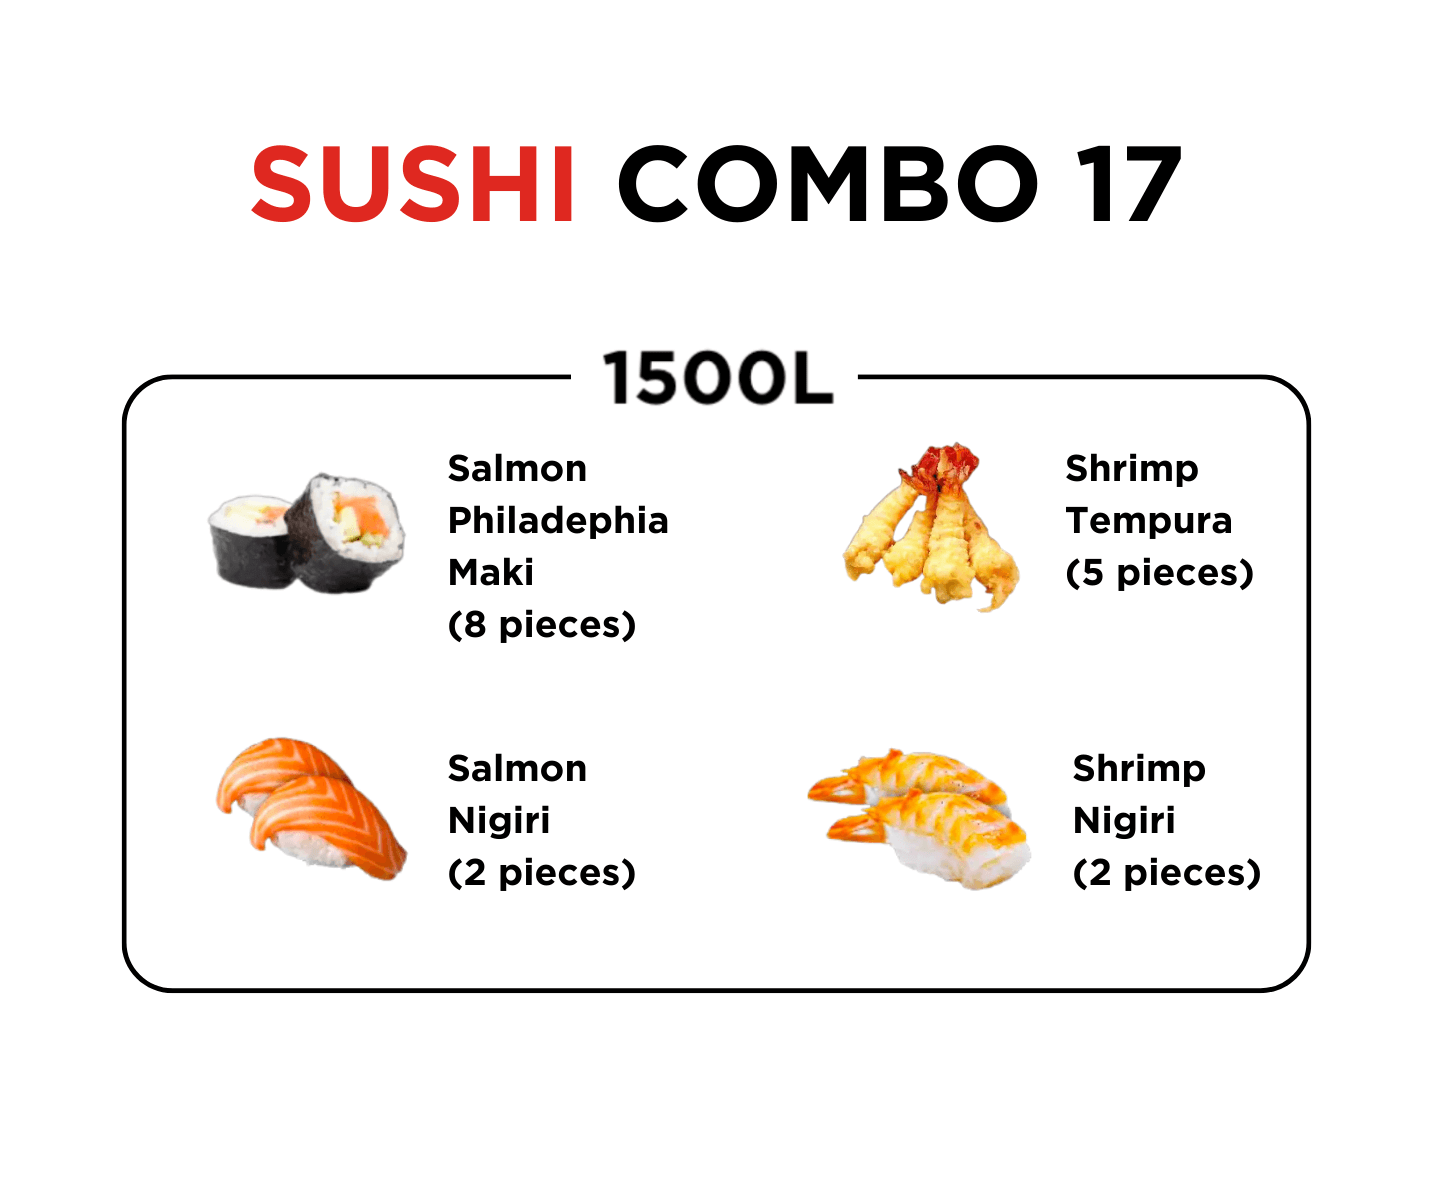 Sushi Combo 17